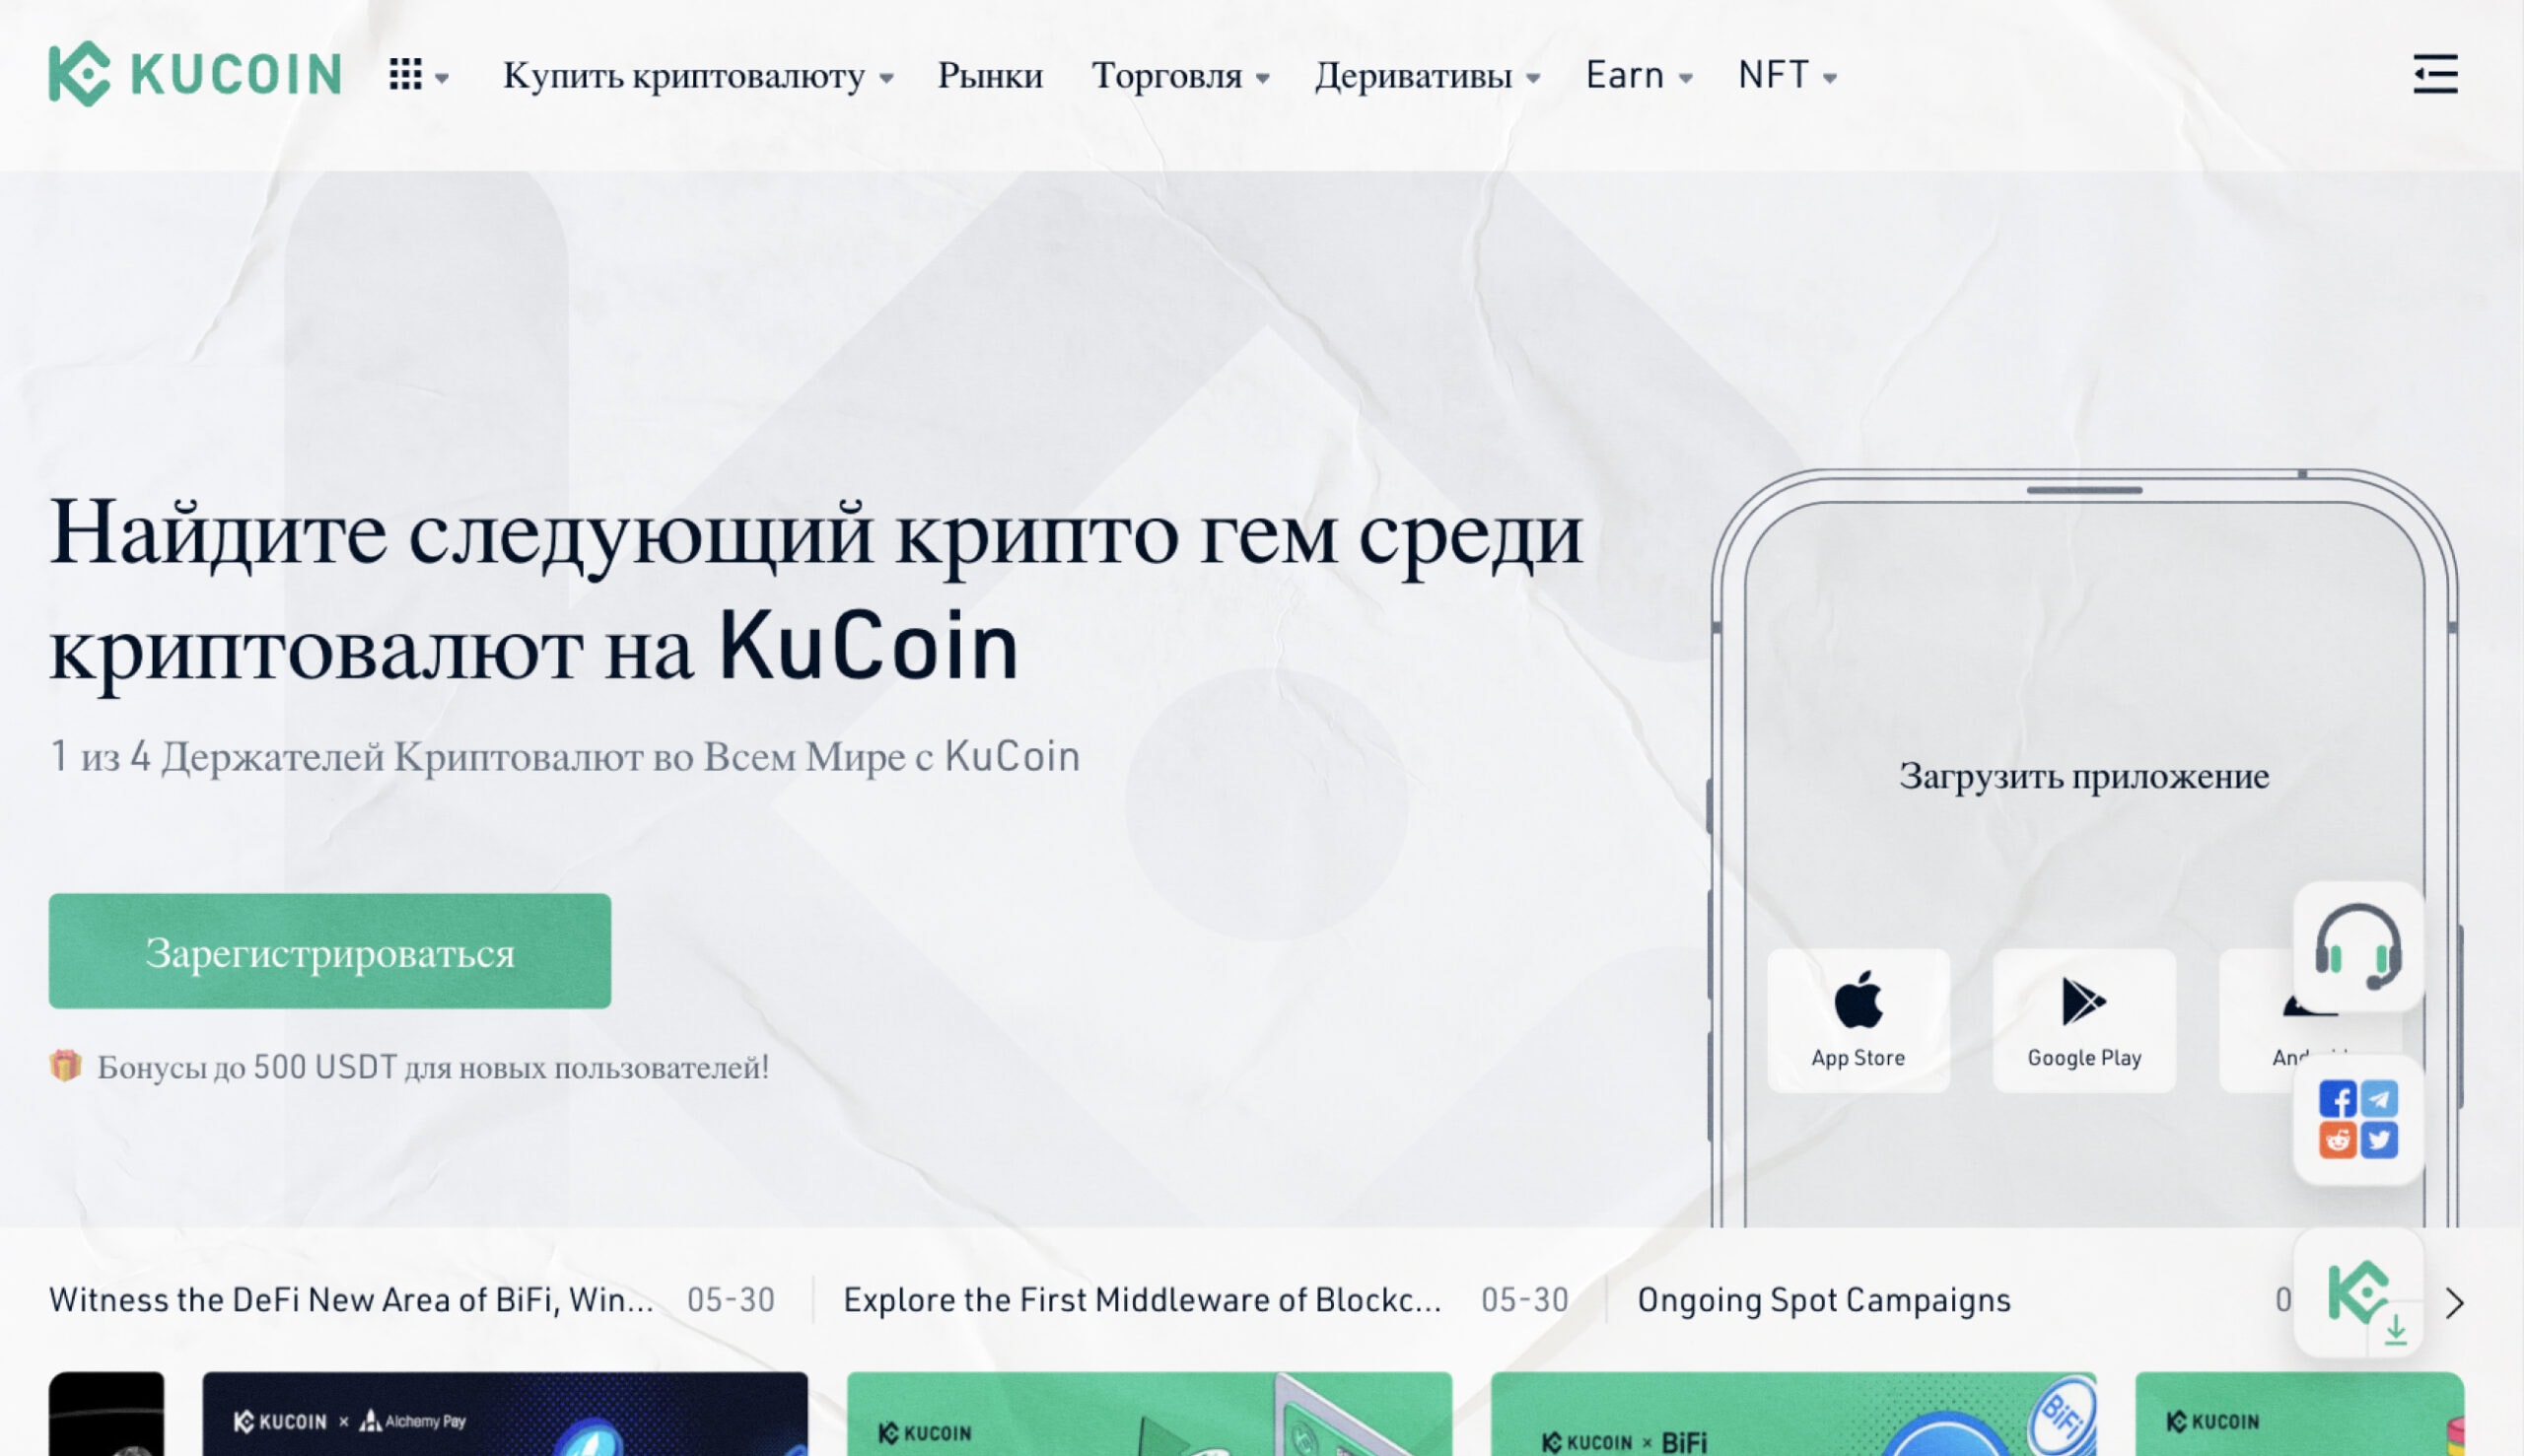 Количество зарегистрированных пользователей на KuCoin переваливает за 8 миллионов.